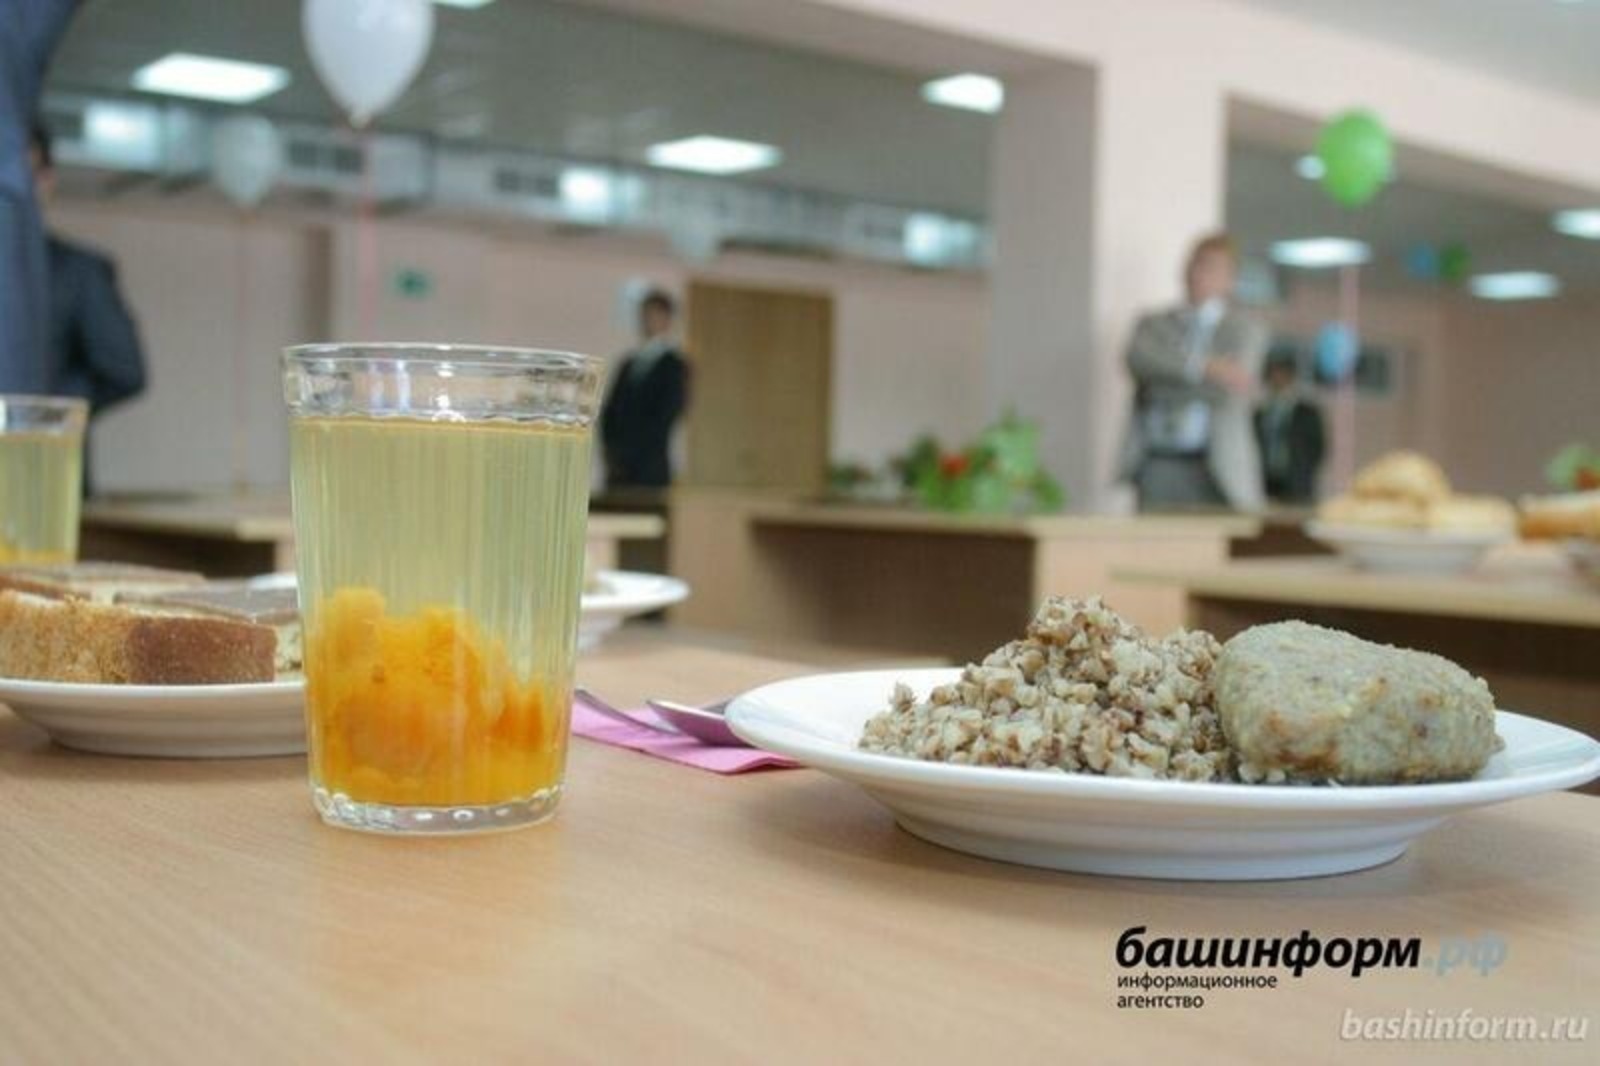 Как изменилось школьное питание в Башкирии